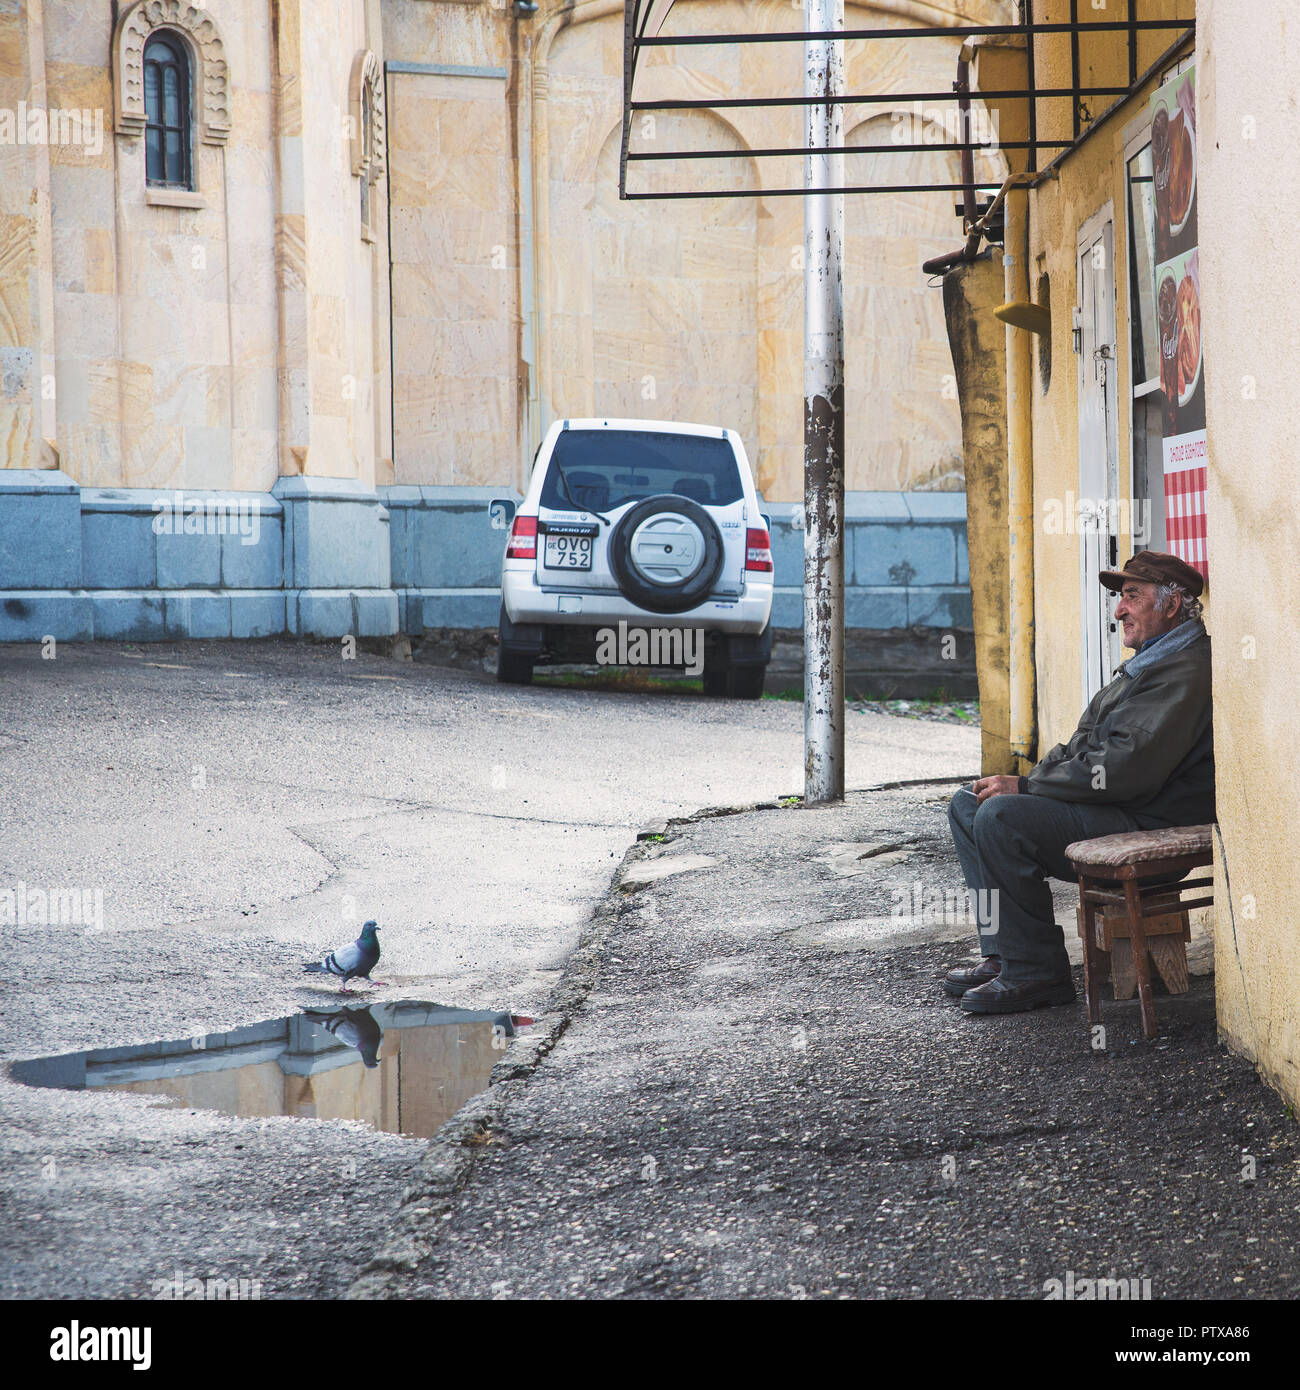 Tbilissi, Géorgie - mars 5, 2016 : Vieil homme assis sur un banc de repos dans la vieille ville. Le 5 mars 2016. Tbilissi, Géorgie. Banque D'Images